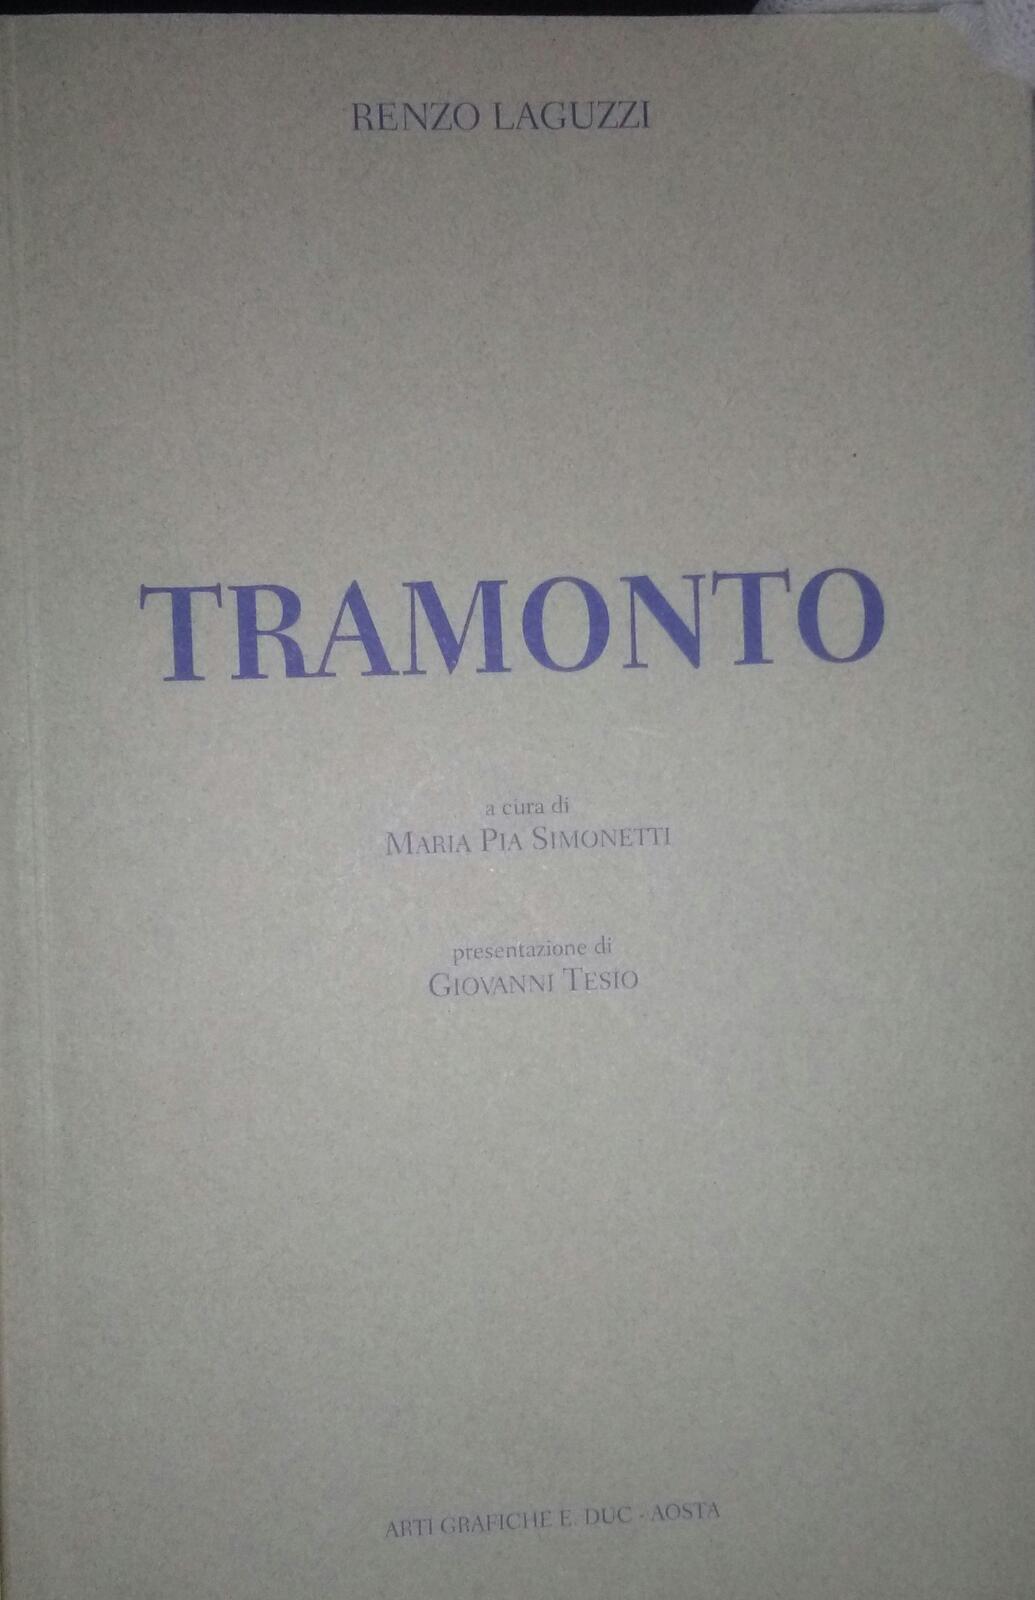 Tramonto-Renzo Laguzzi,1999,Arti Grafiche E.duc Aosta - S